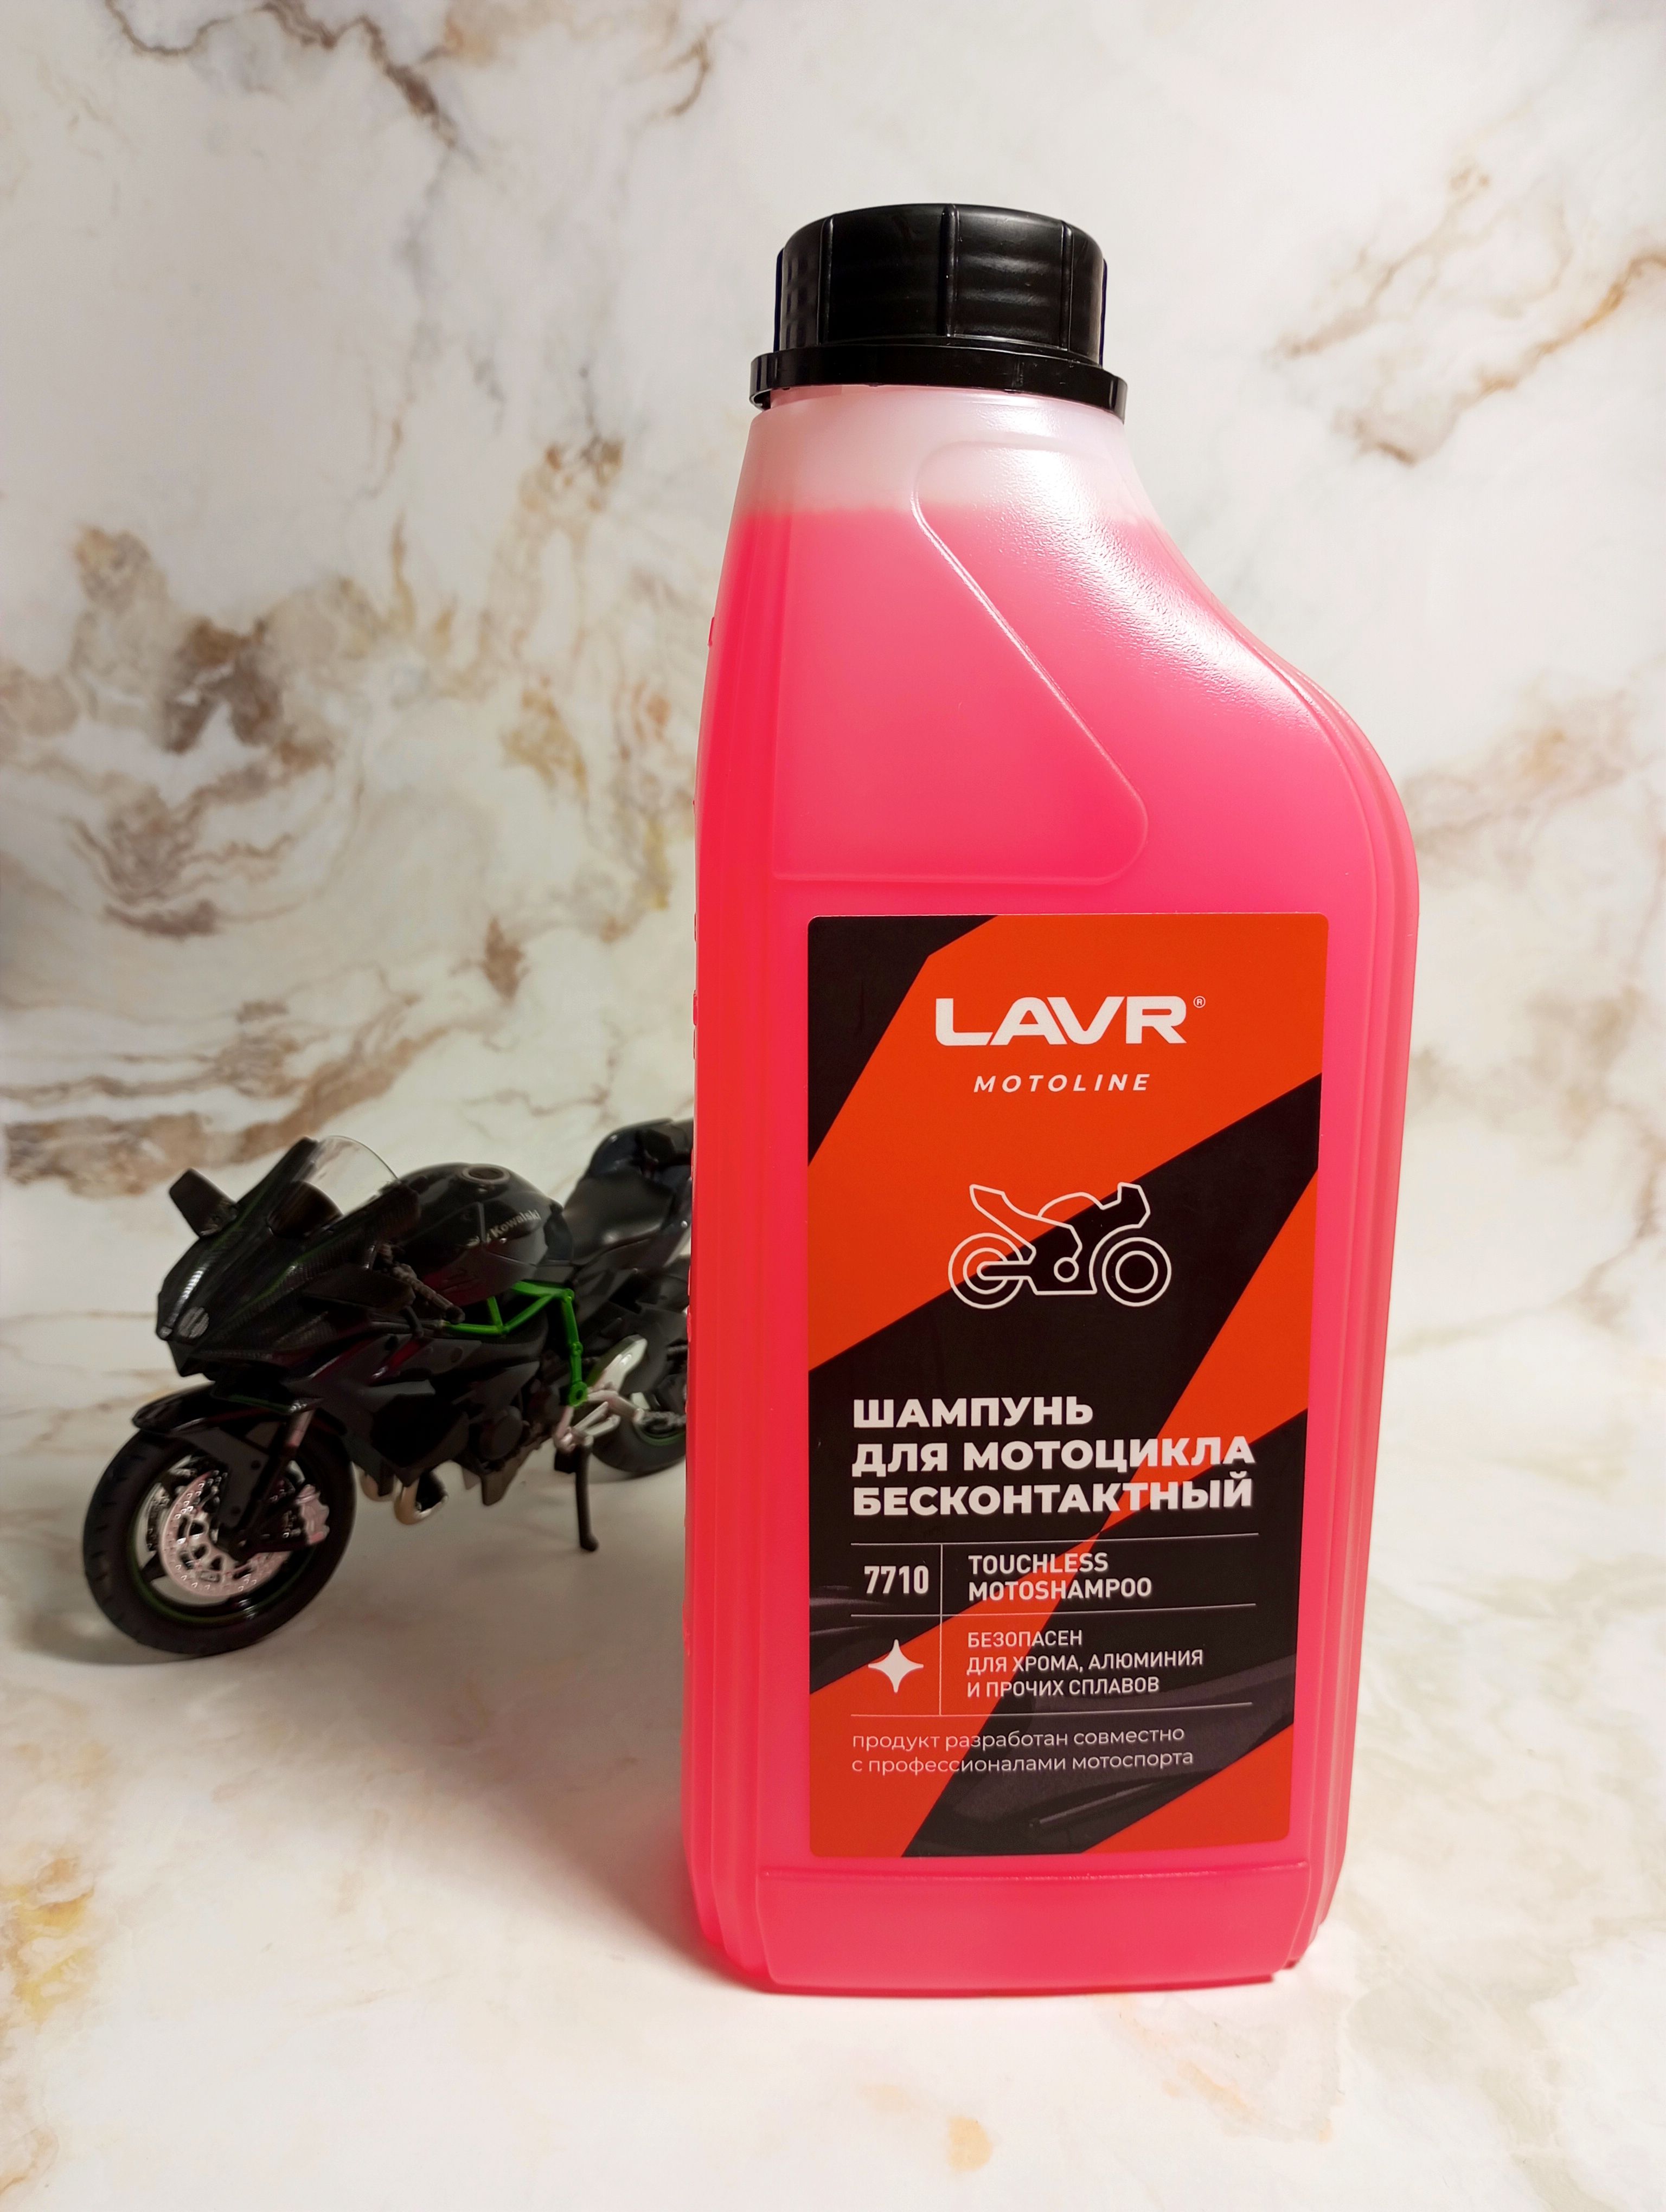 LAVR Motoline Moto Shampoo Шампунь концентрированный для бесконтактной мойки мотоцикла 1000 мл